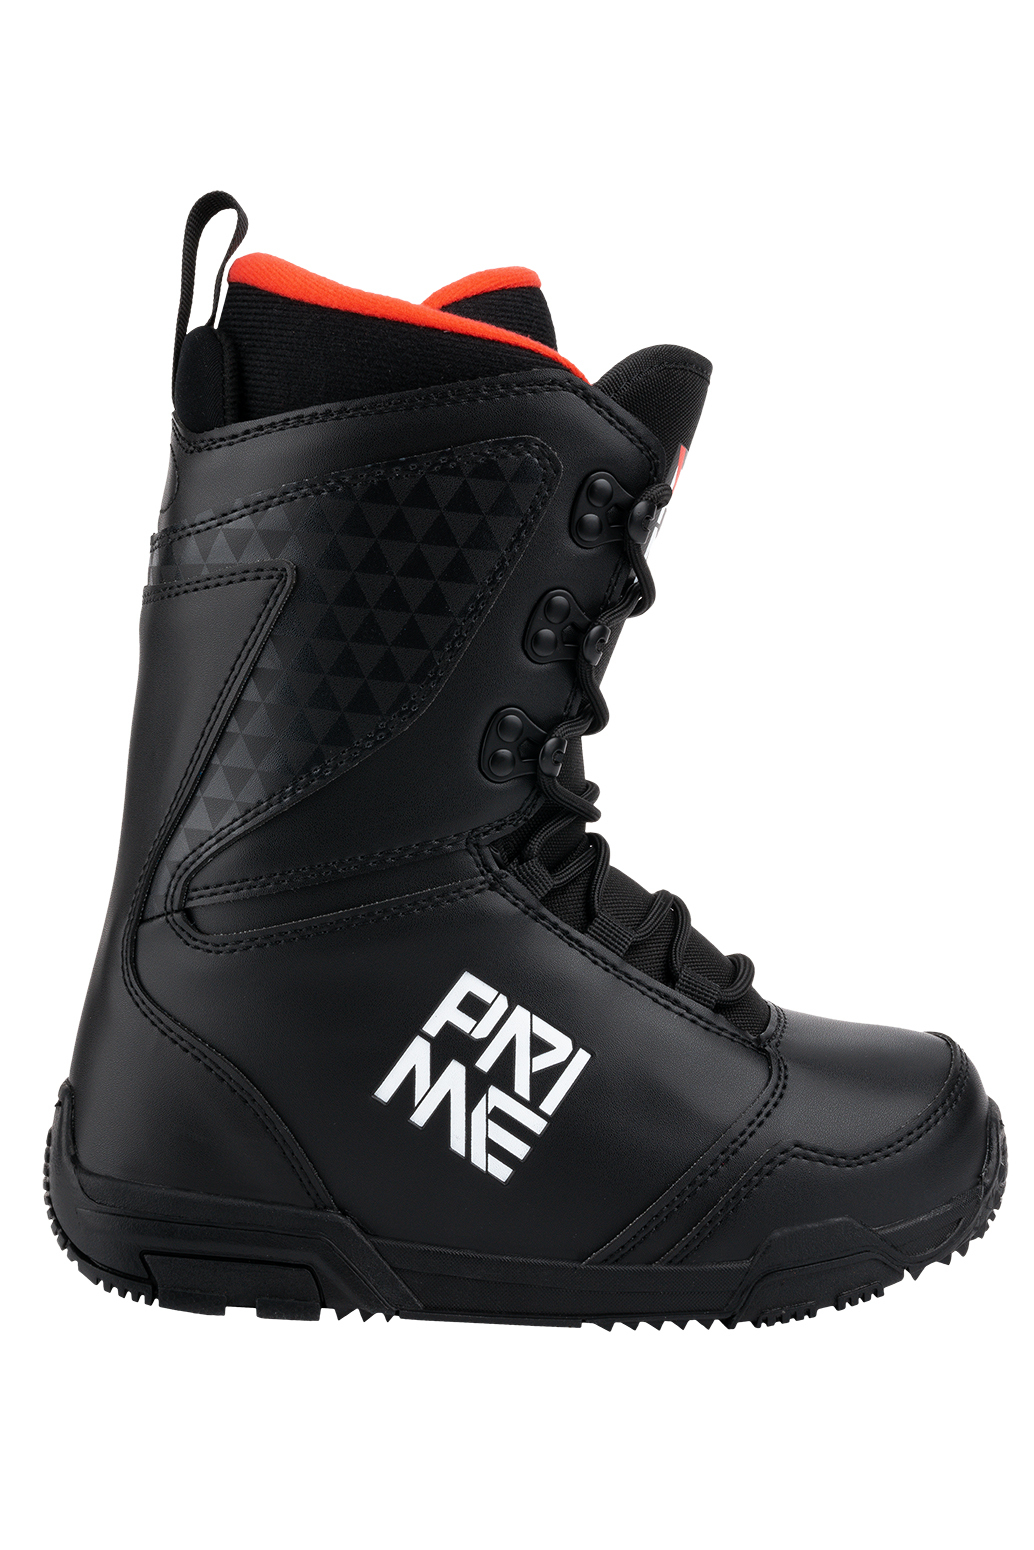 Ботинки сноубордические Prime 19-20 Daily Men Black, размер 42,0 EUR